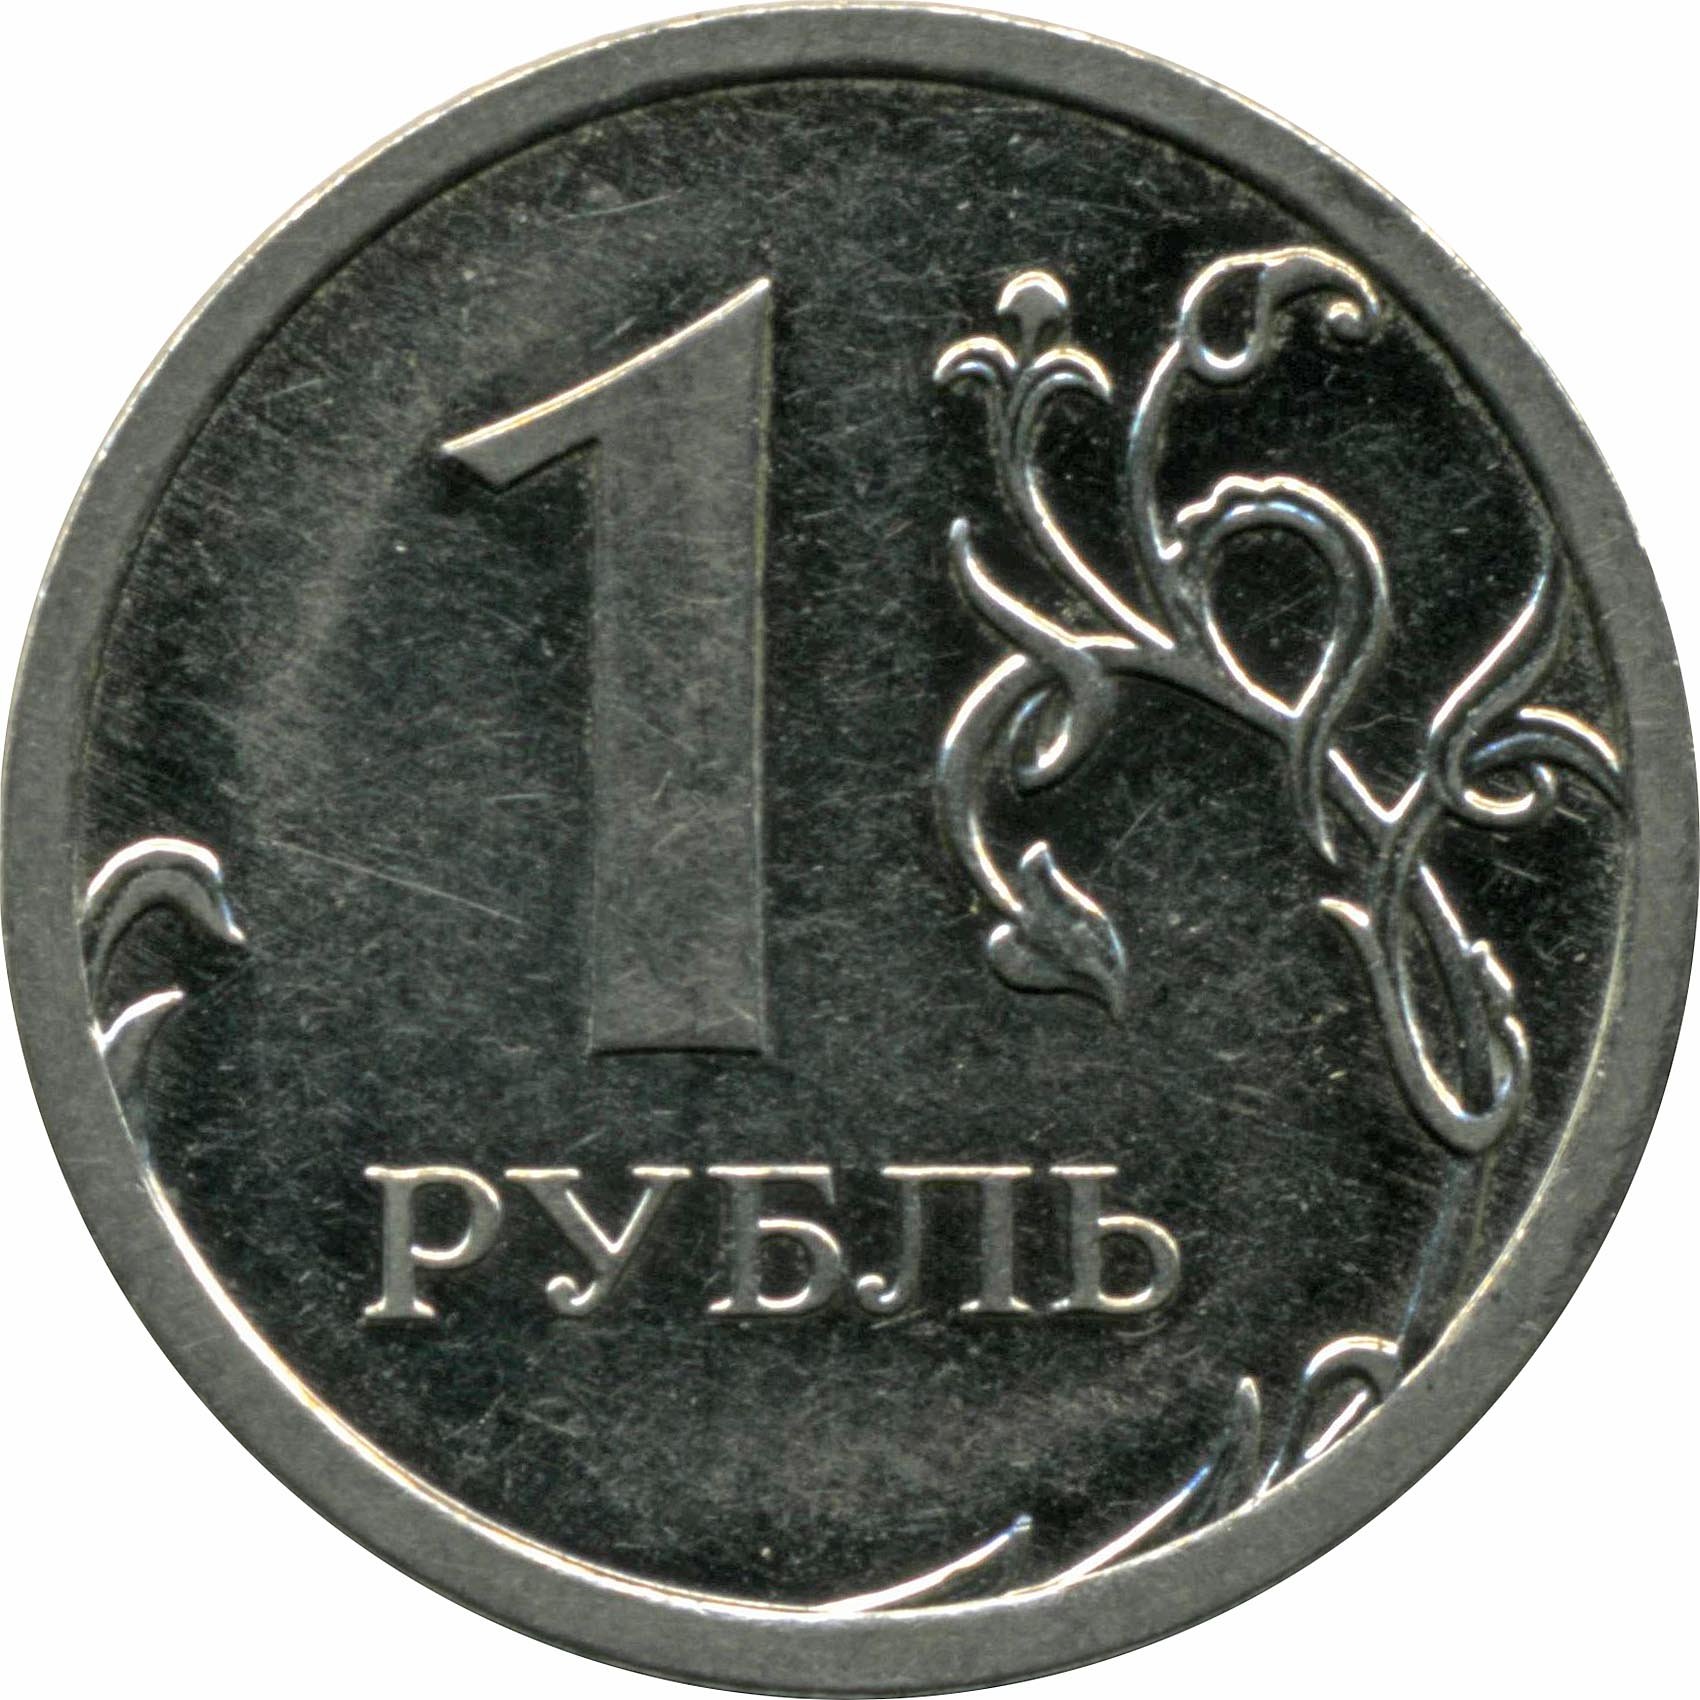 Музыка за 1 руб. 1 Рубль. Монета 1 рубль. Монета 1 рубль на прозрачном фоне. Монеты России 1 рубль.